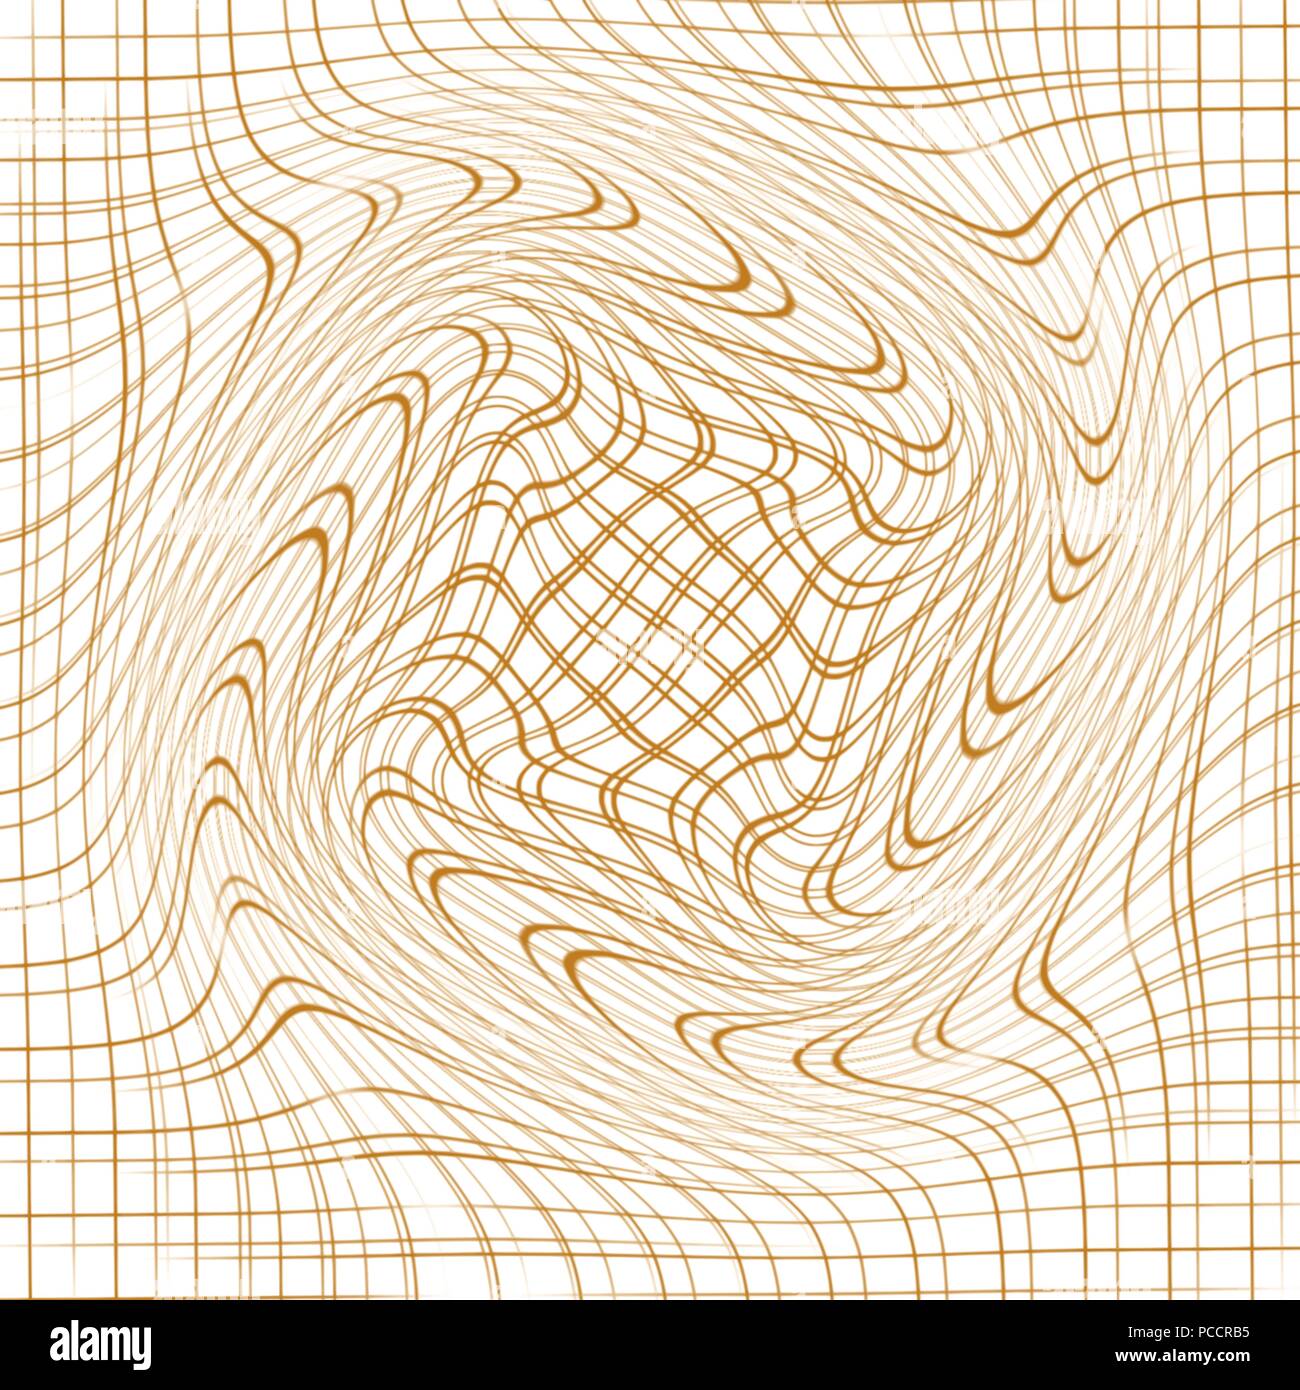 Fawn beige astratta griglia deformata la configurazione di sfondo, illustrazione vettoriale Illustrazione Vettoriale